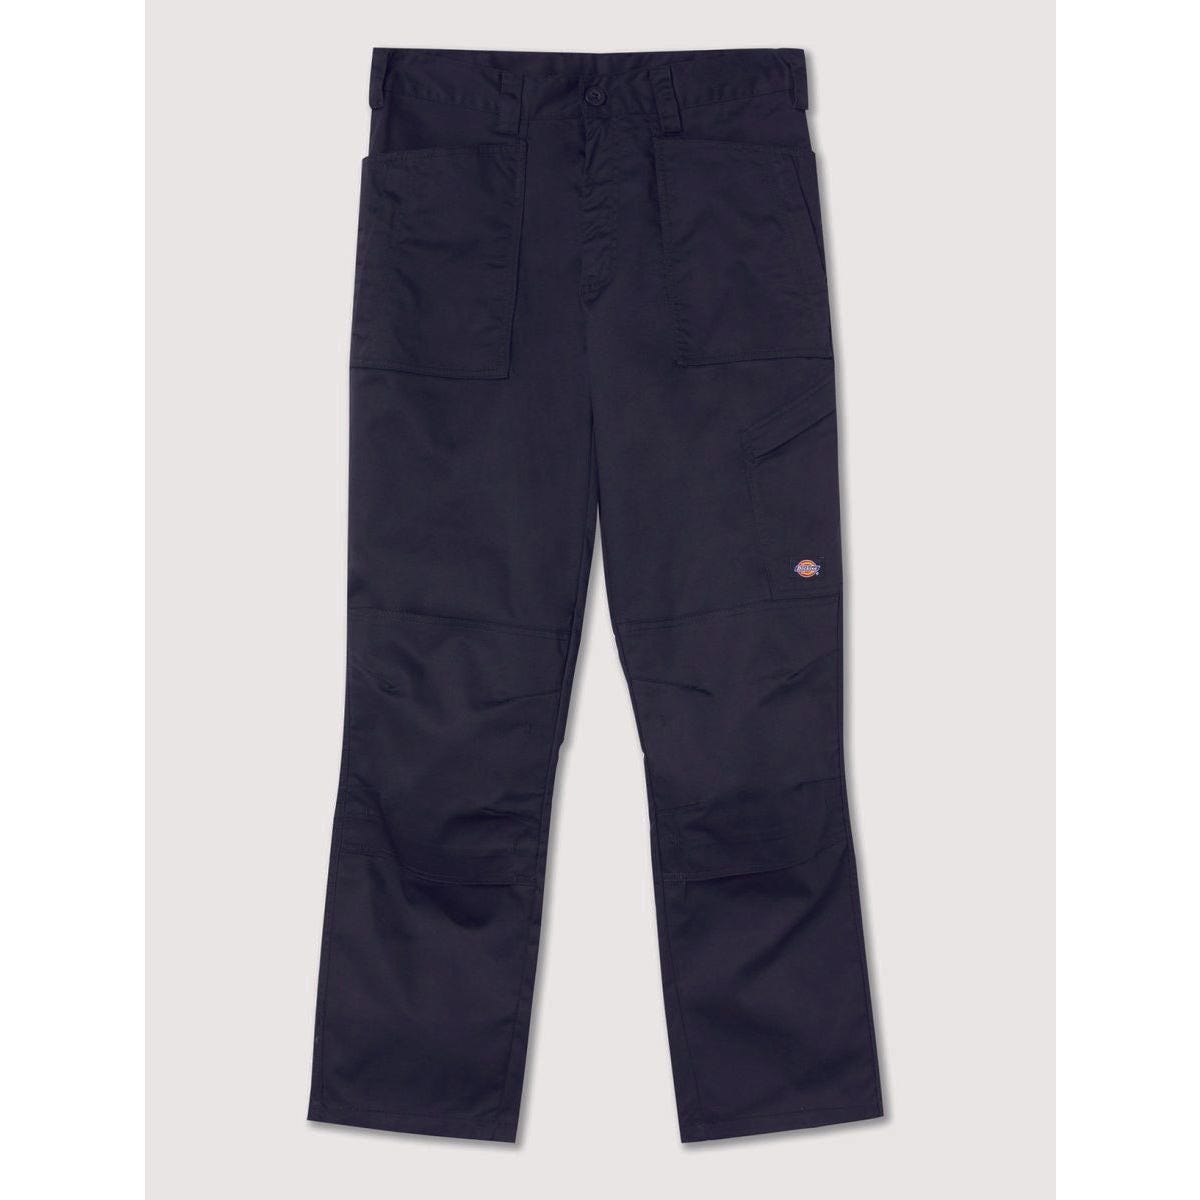 Pantalon de travail Action Flex noir - Dickies - Taille 44 7